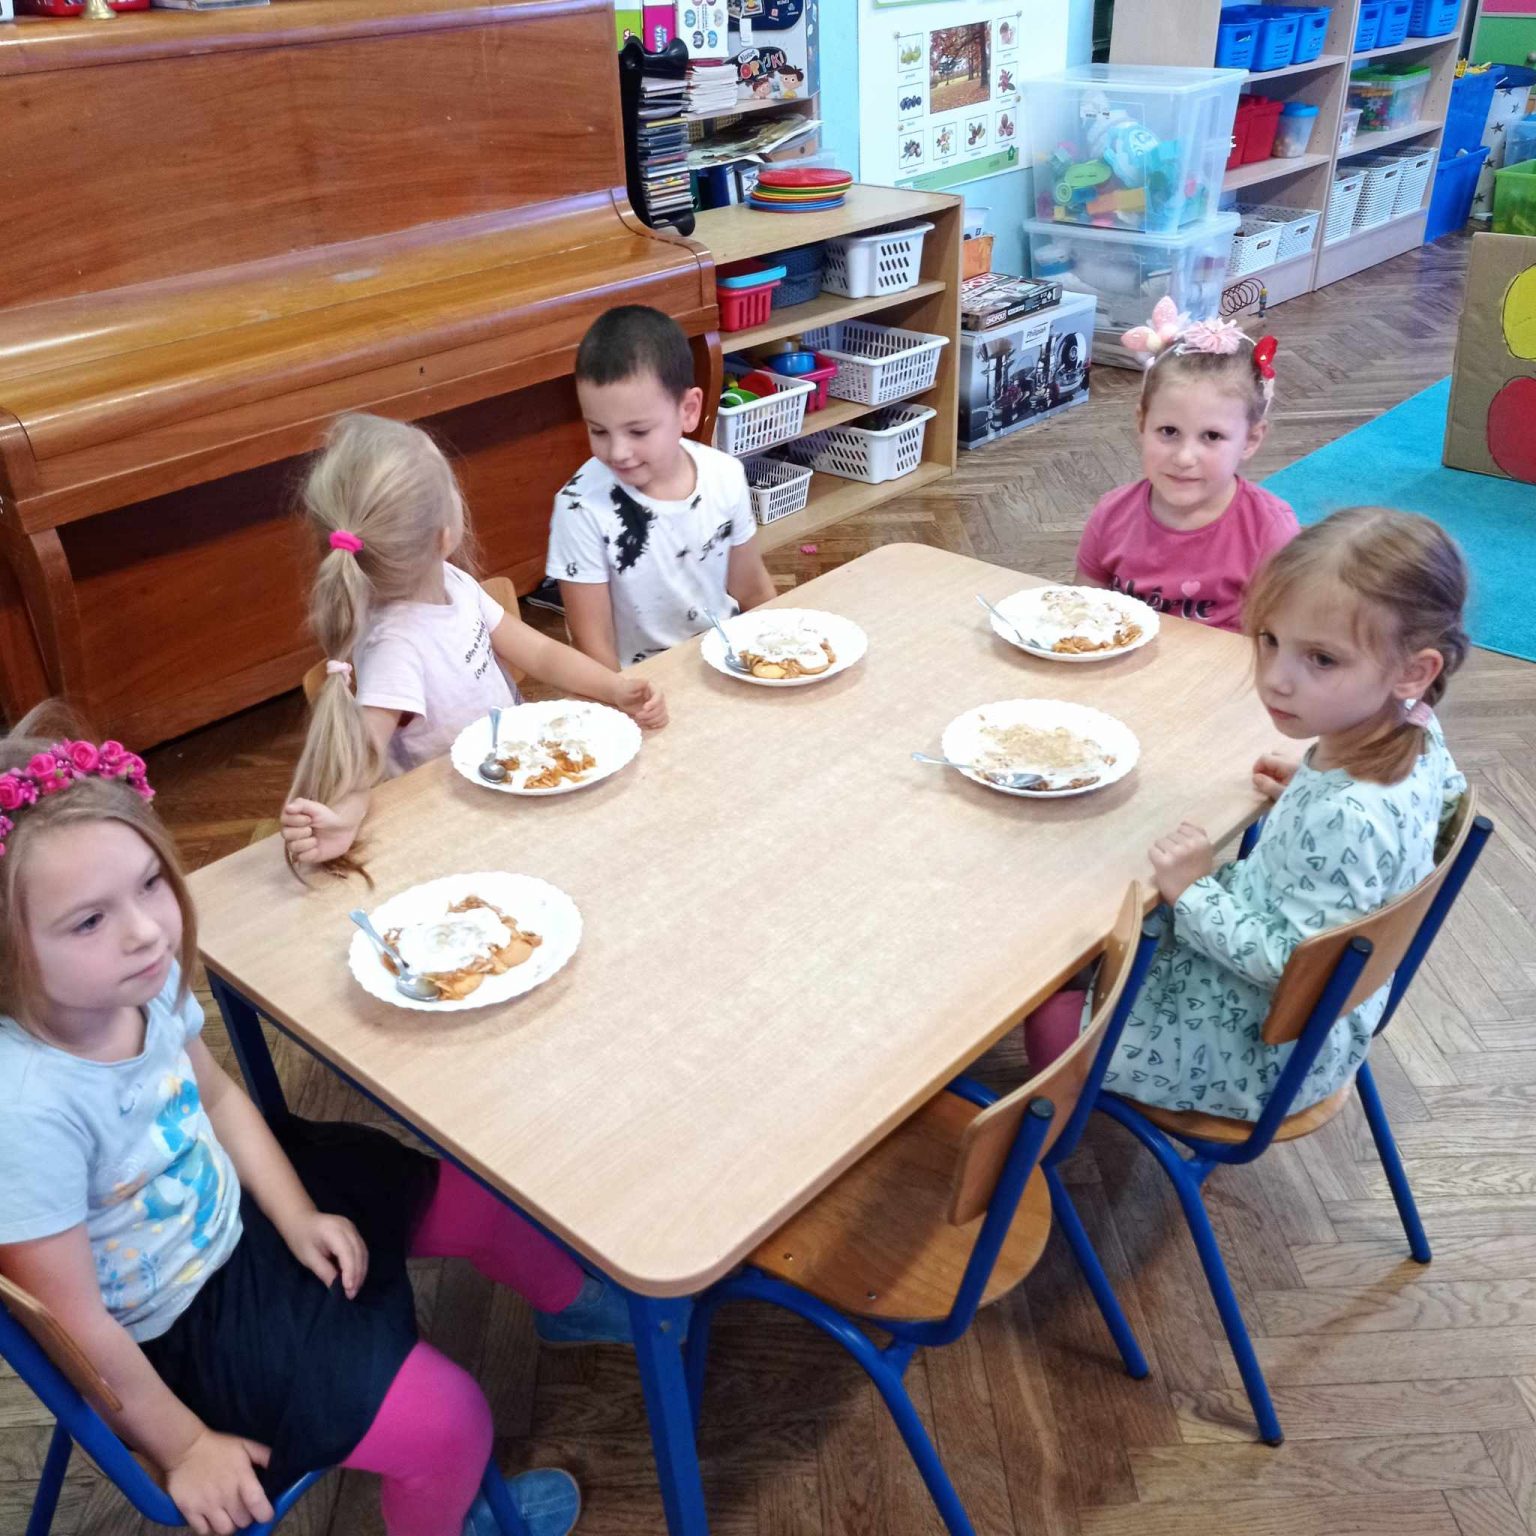 ciasto na talerzykach przed dziećmi siedzącymi przy stole